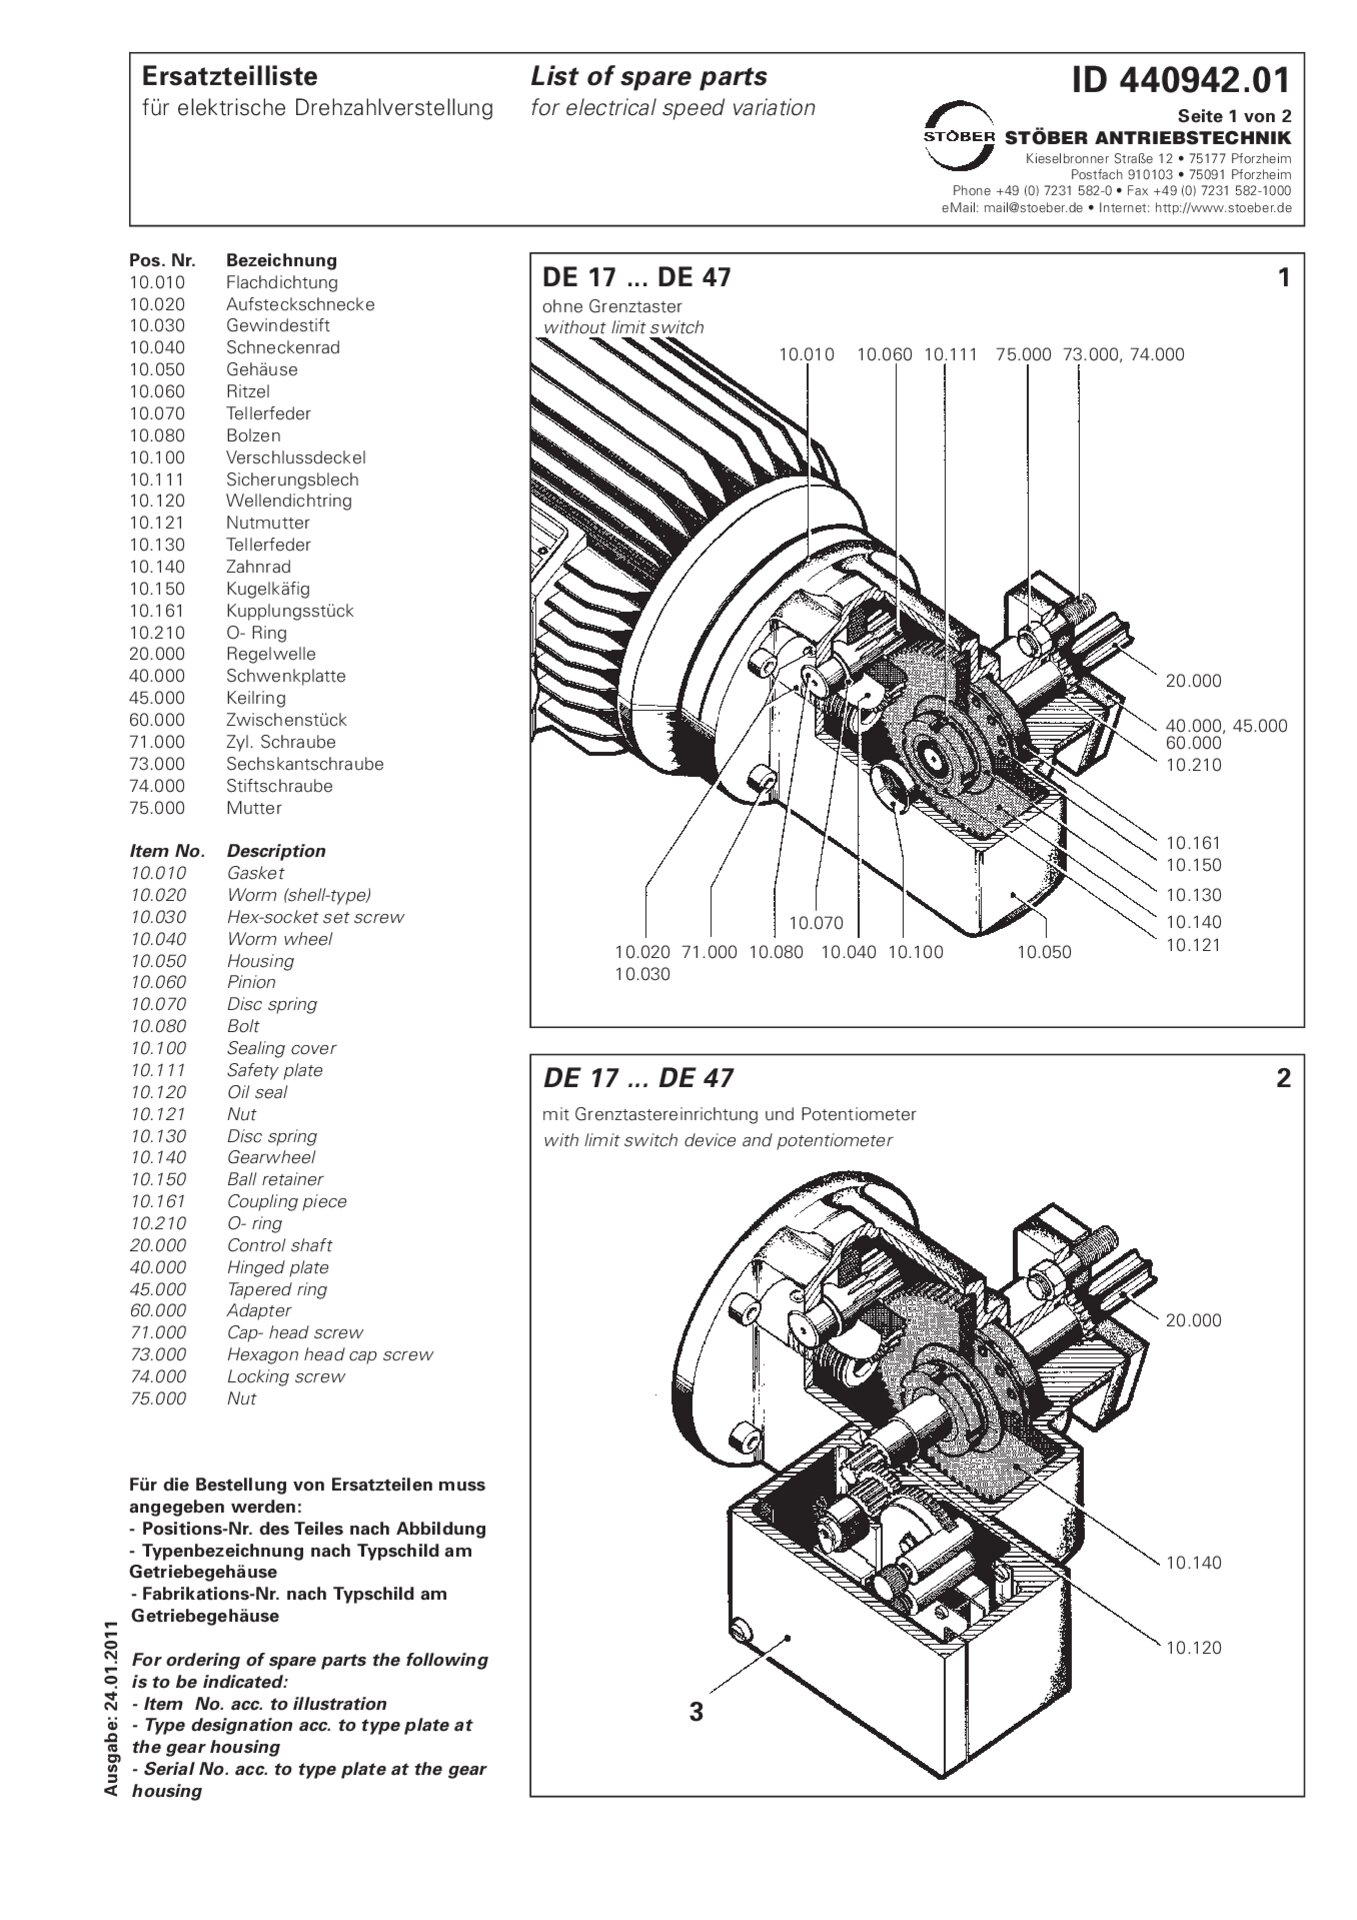 Ersatzteilliste DE17/DE27/D37/DE47 für elektrische DrehzahlverstellungSpare parts list DE17/DE27/D37/DE47 for electrical speed variation